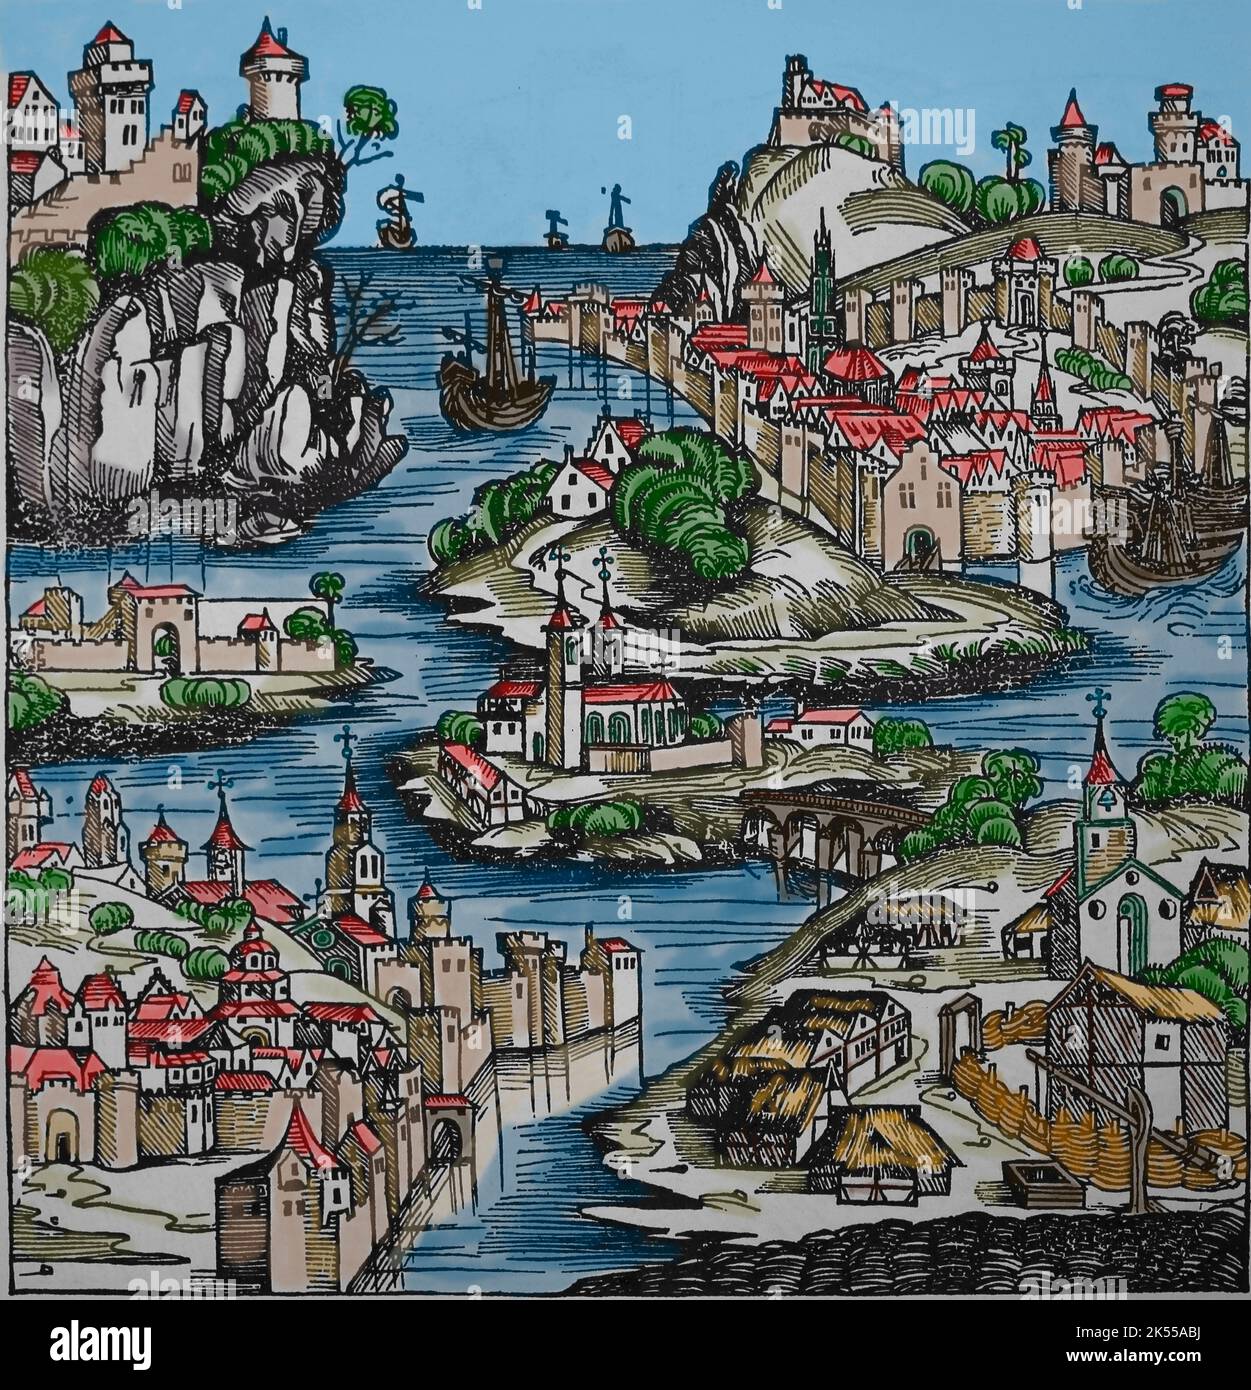 Littaw wurde dem 'König von Polen' zugeschrieben. Polnische Landschaft voller Burgen, Dörfer, Kirchen und Boote. Liber Chronicarum, 1493. Gravur. Stockfoto